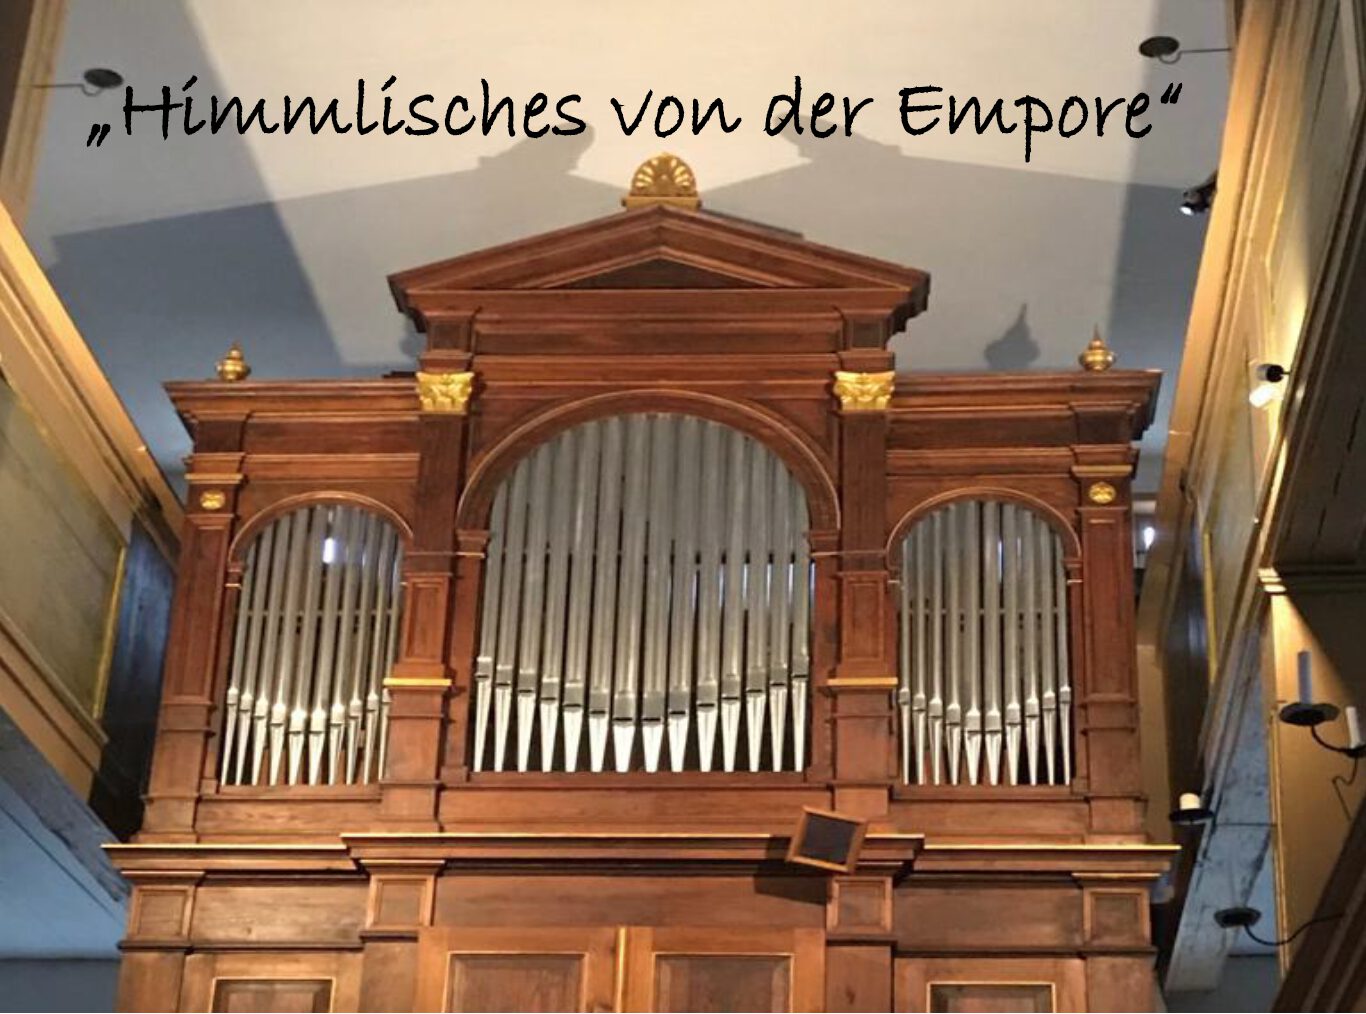 You are currently viewing Himmlisches von der Empore